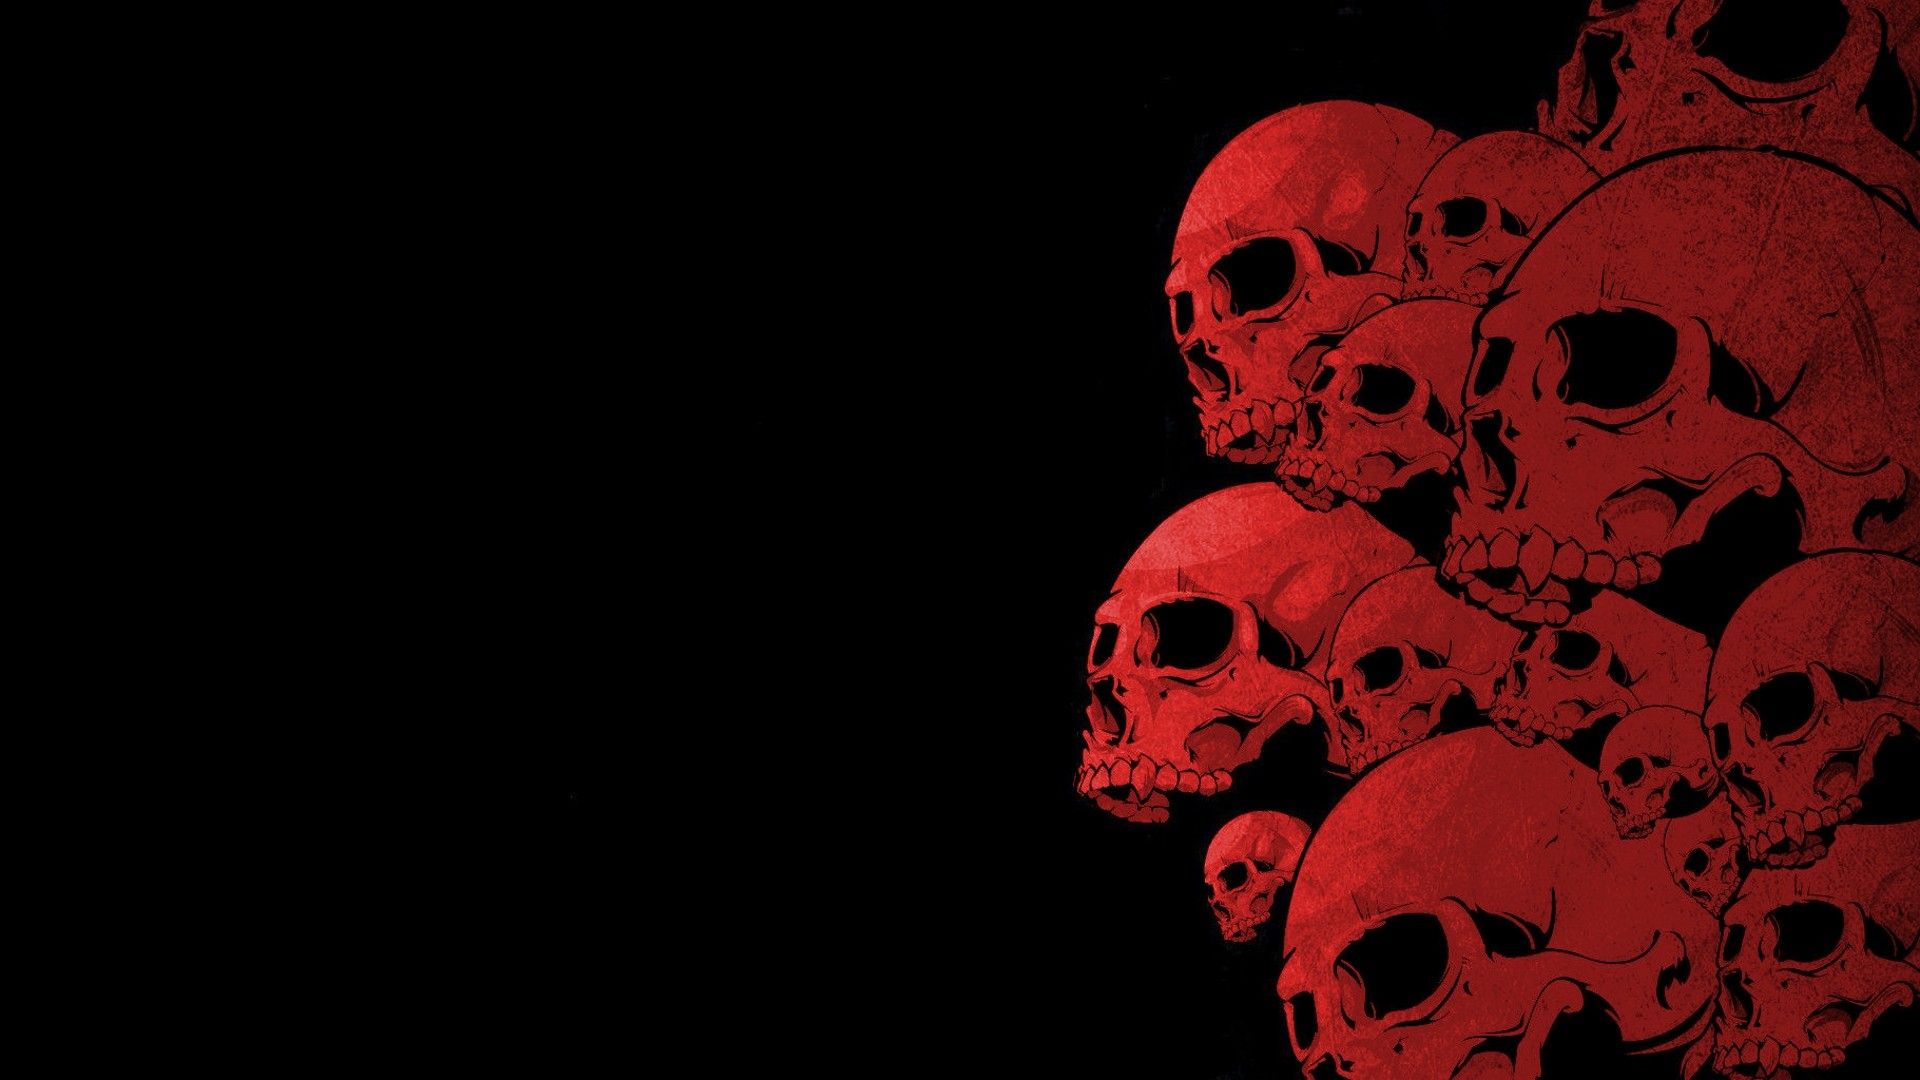 Skull Desktop Wallpaper. Skull wallpaper, Red and black wallpaper, Edgy wallpaper